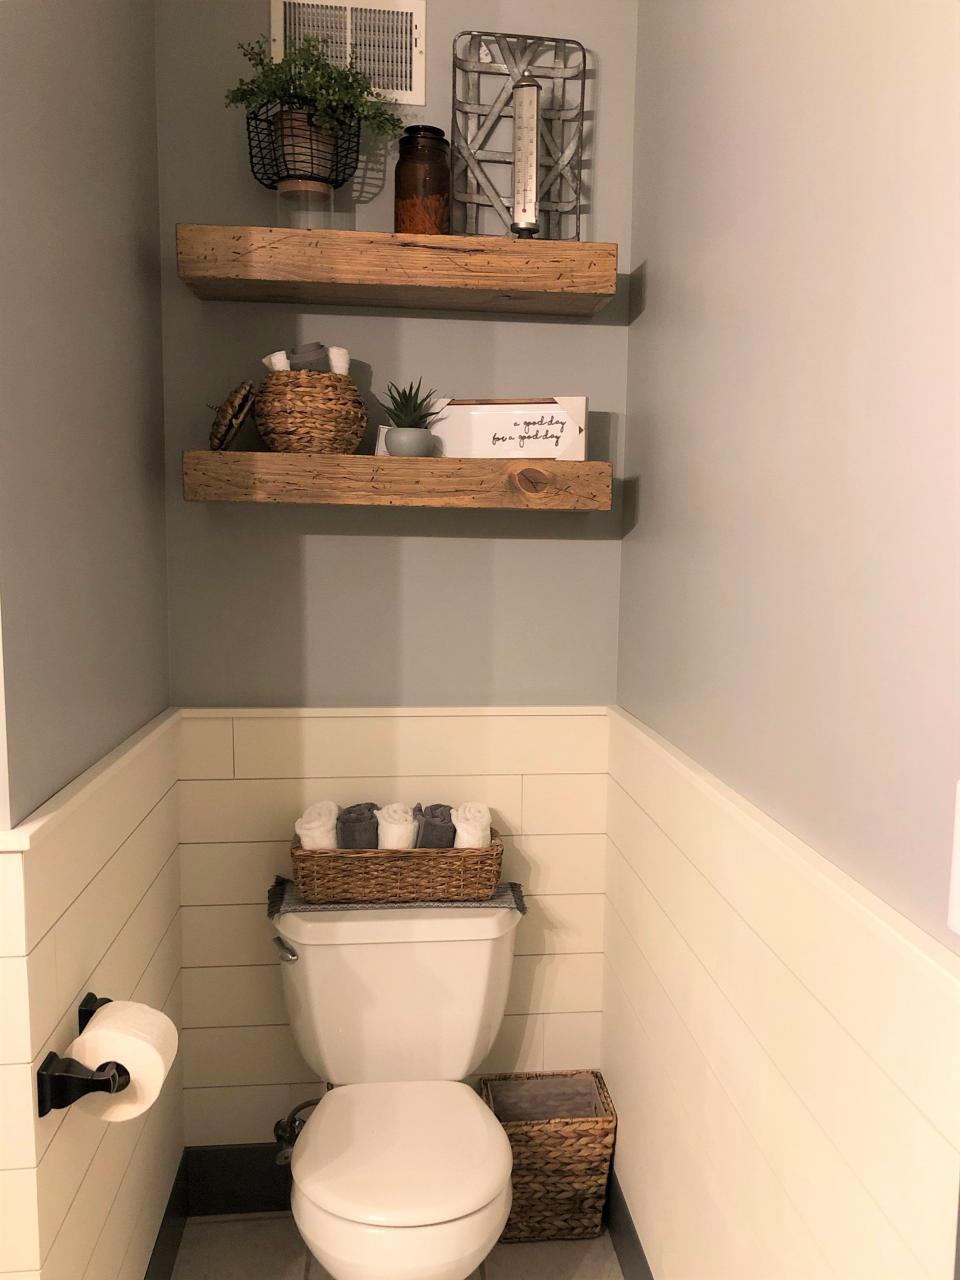 10+ Decorating Ideas For Bathroom Shelves